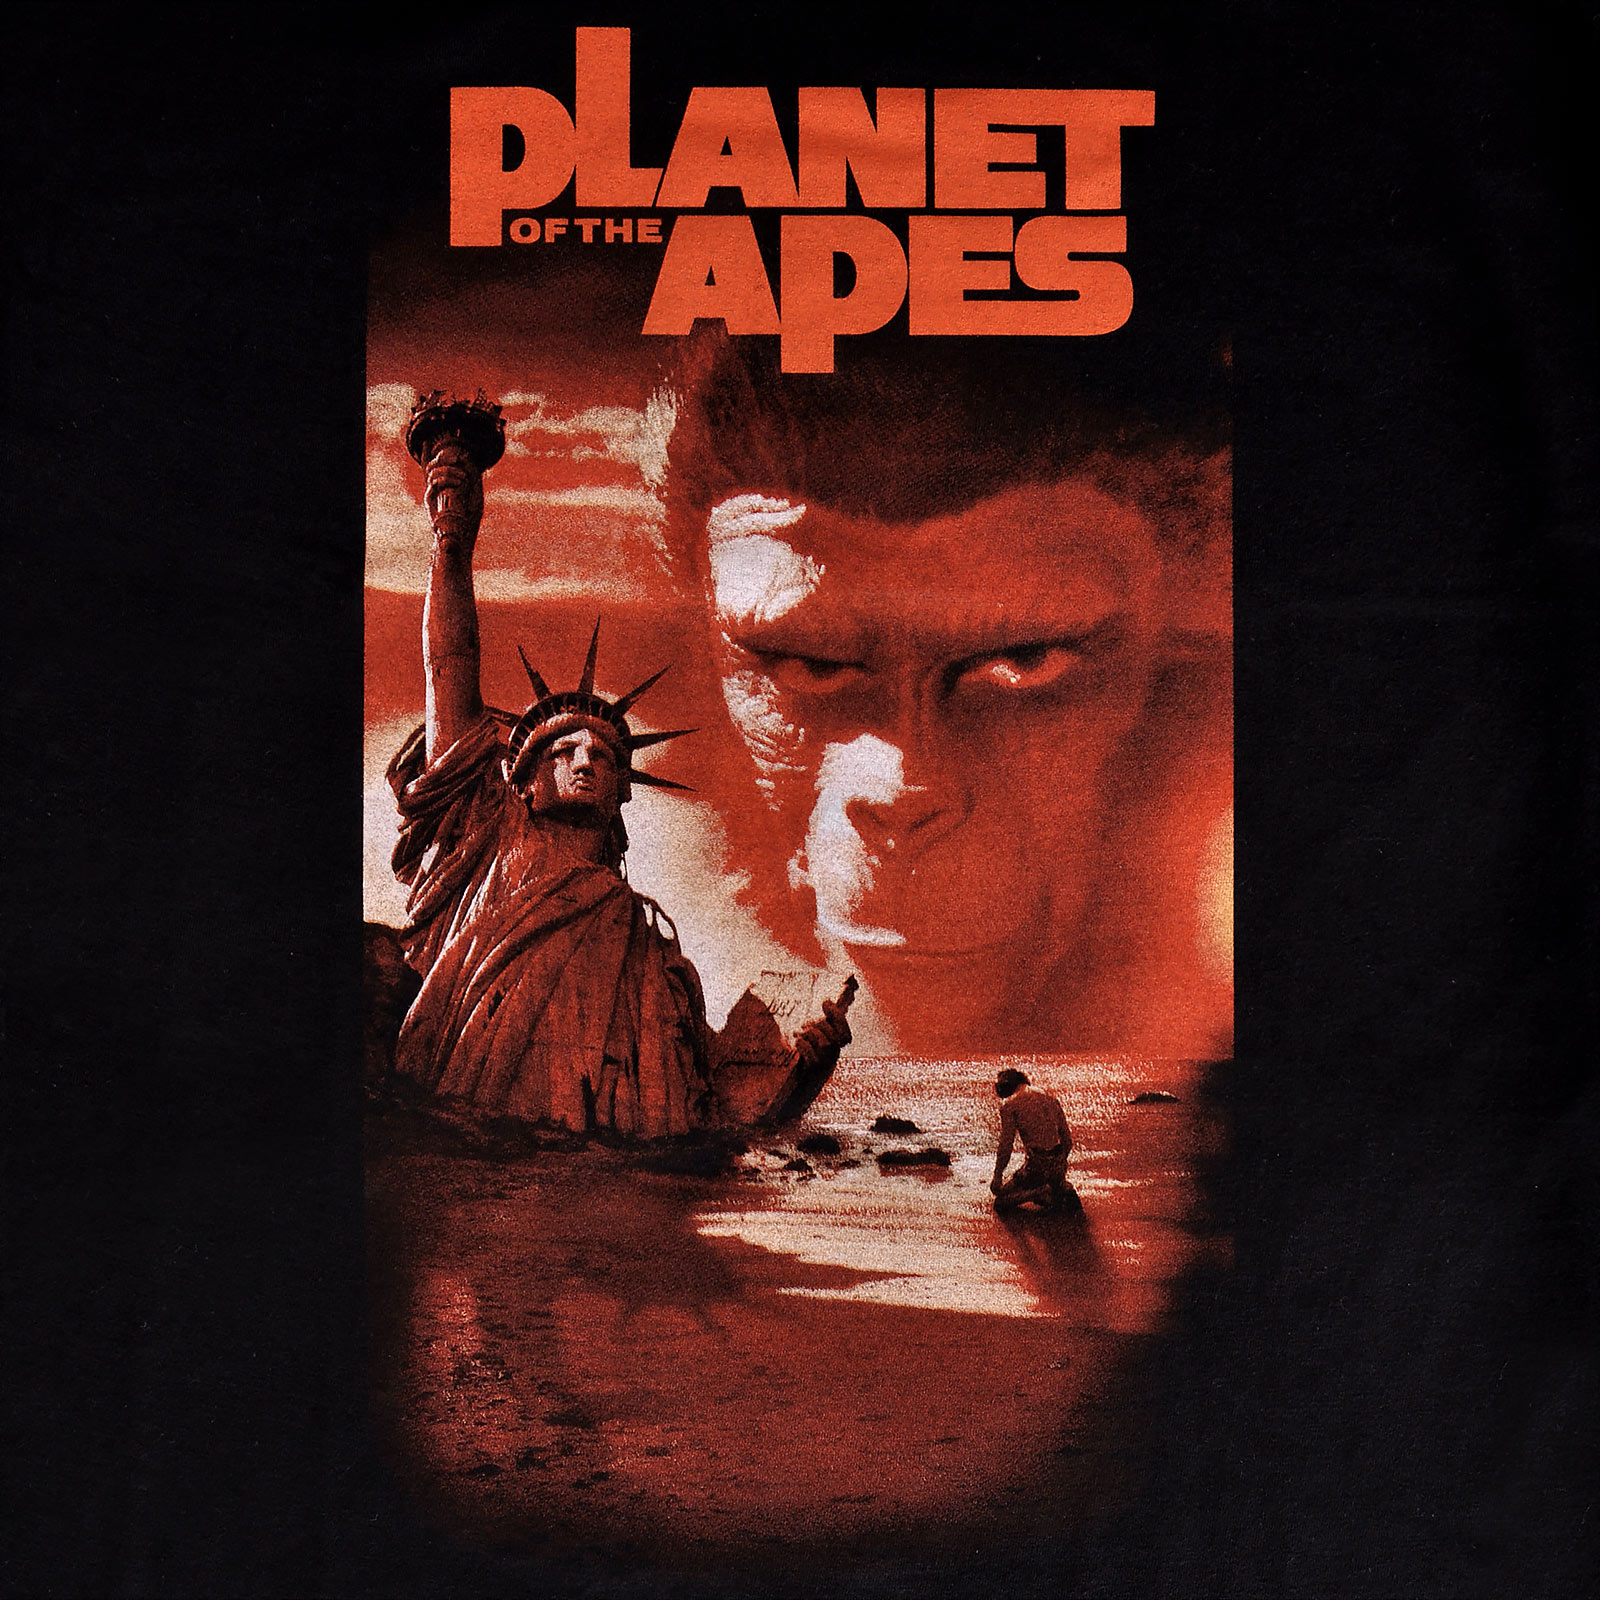 La Planète des Singes - T-shirt noir affiche de film classique 1968